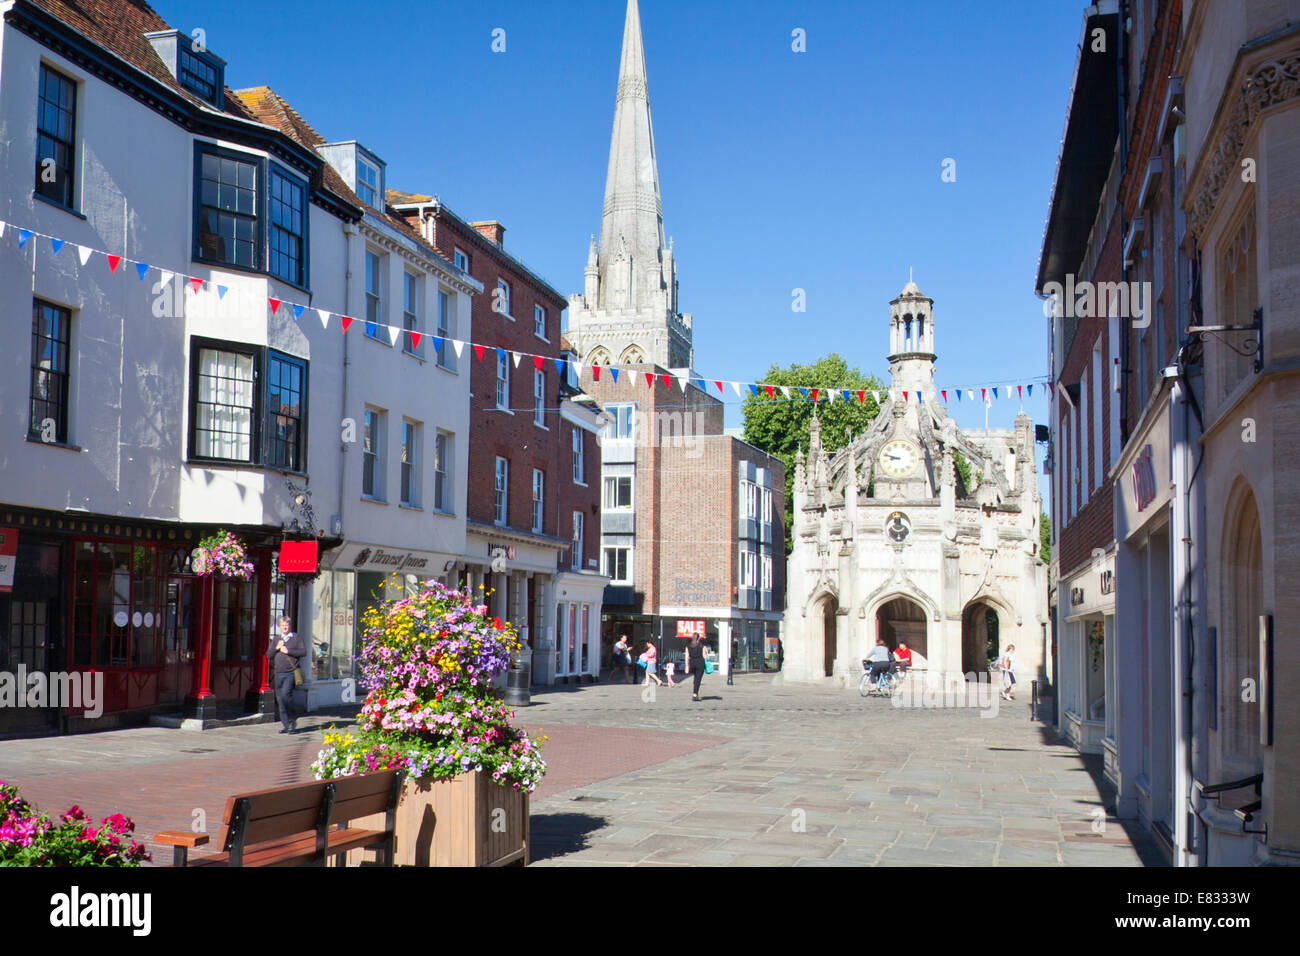 Le marché de la croix de pierre octogonale en 1503 Chichester, West Sussex, England, UK Banque D'Images